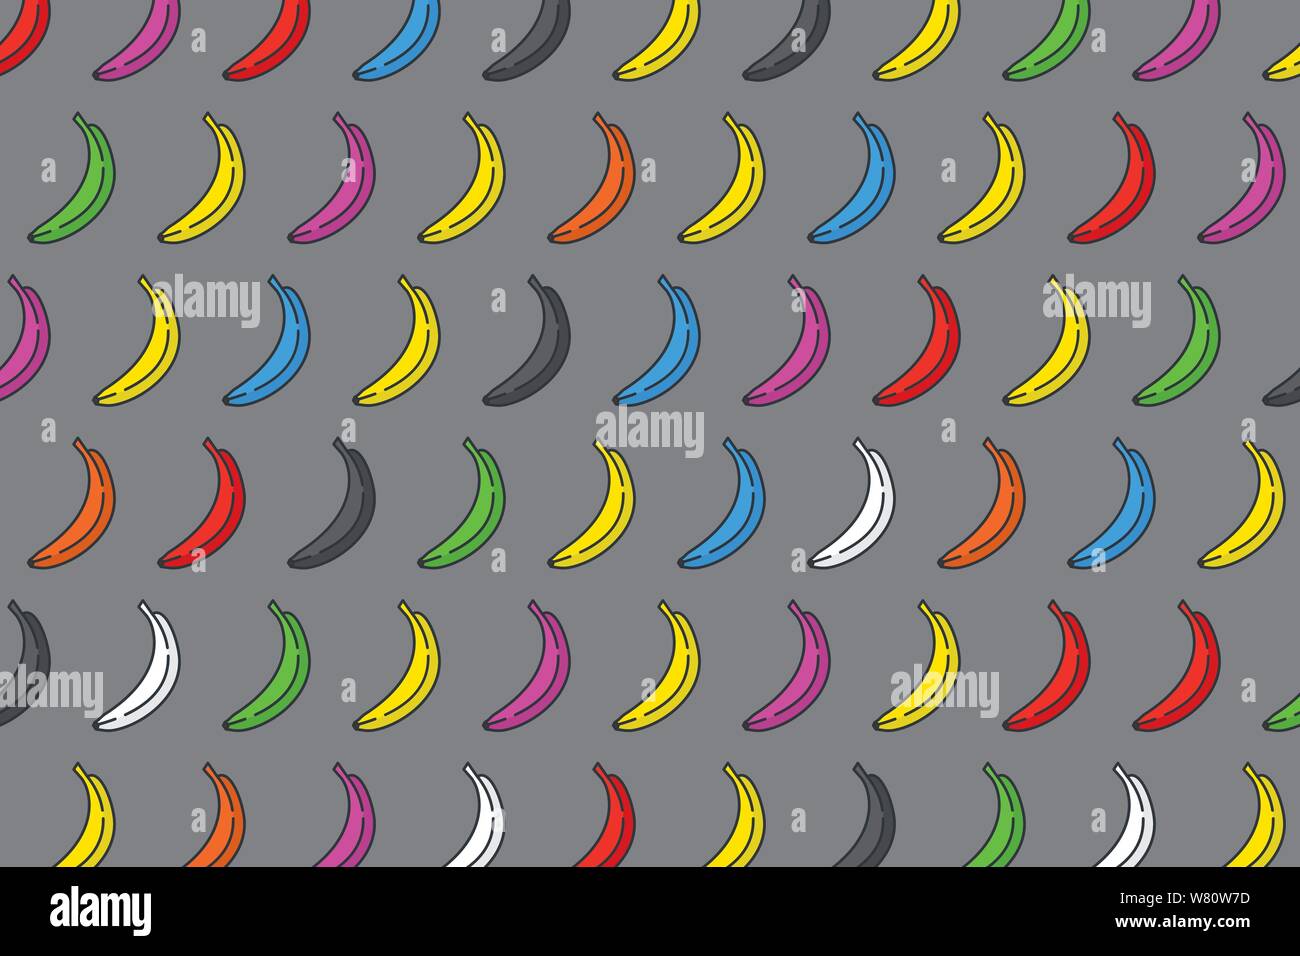 Diversity konzept Vektor-illustration, bunte Bananen Muster. Stock Vektor